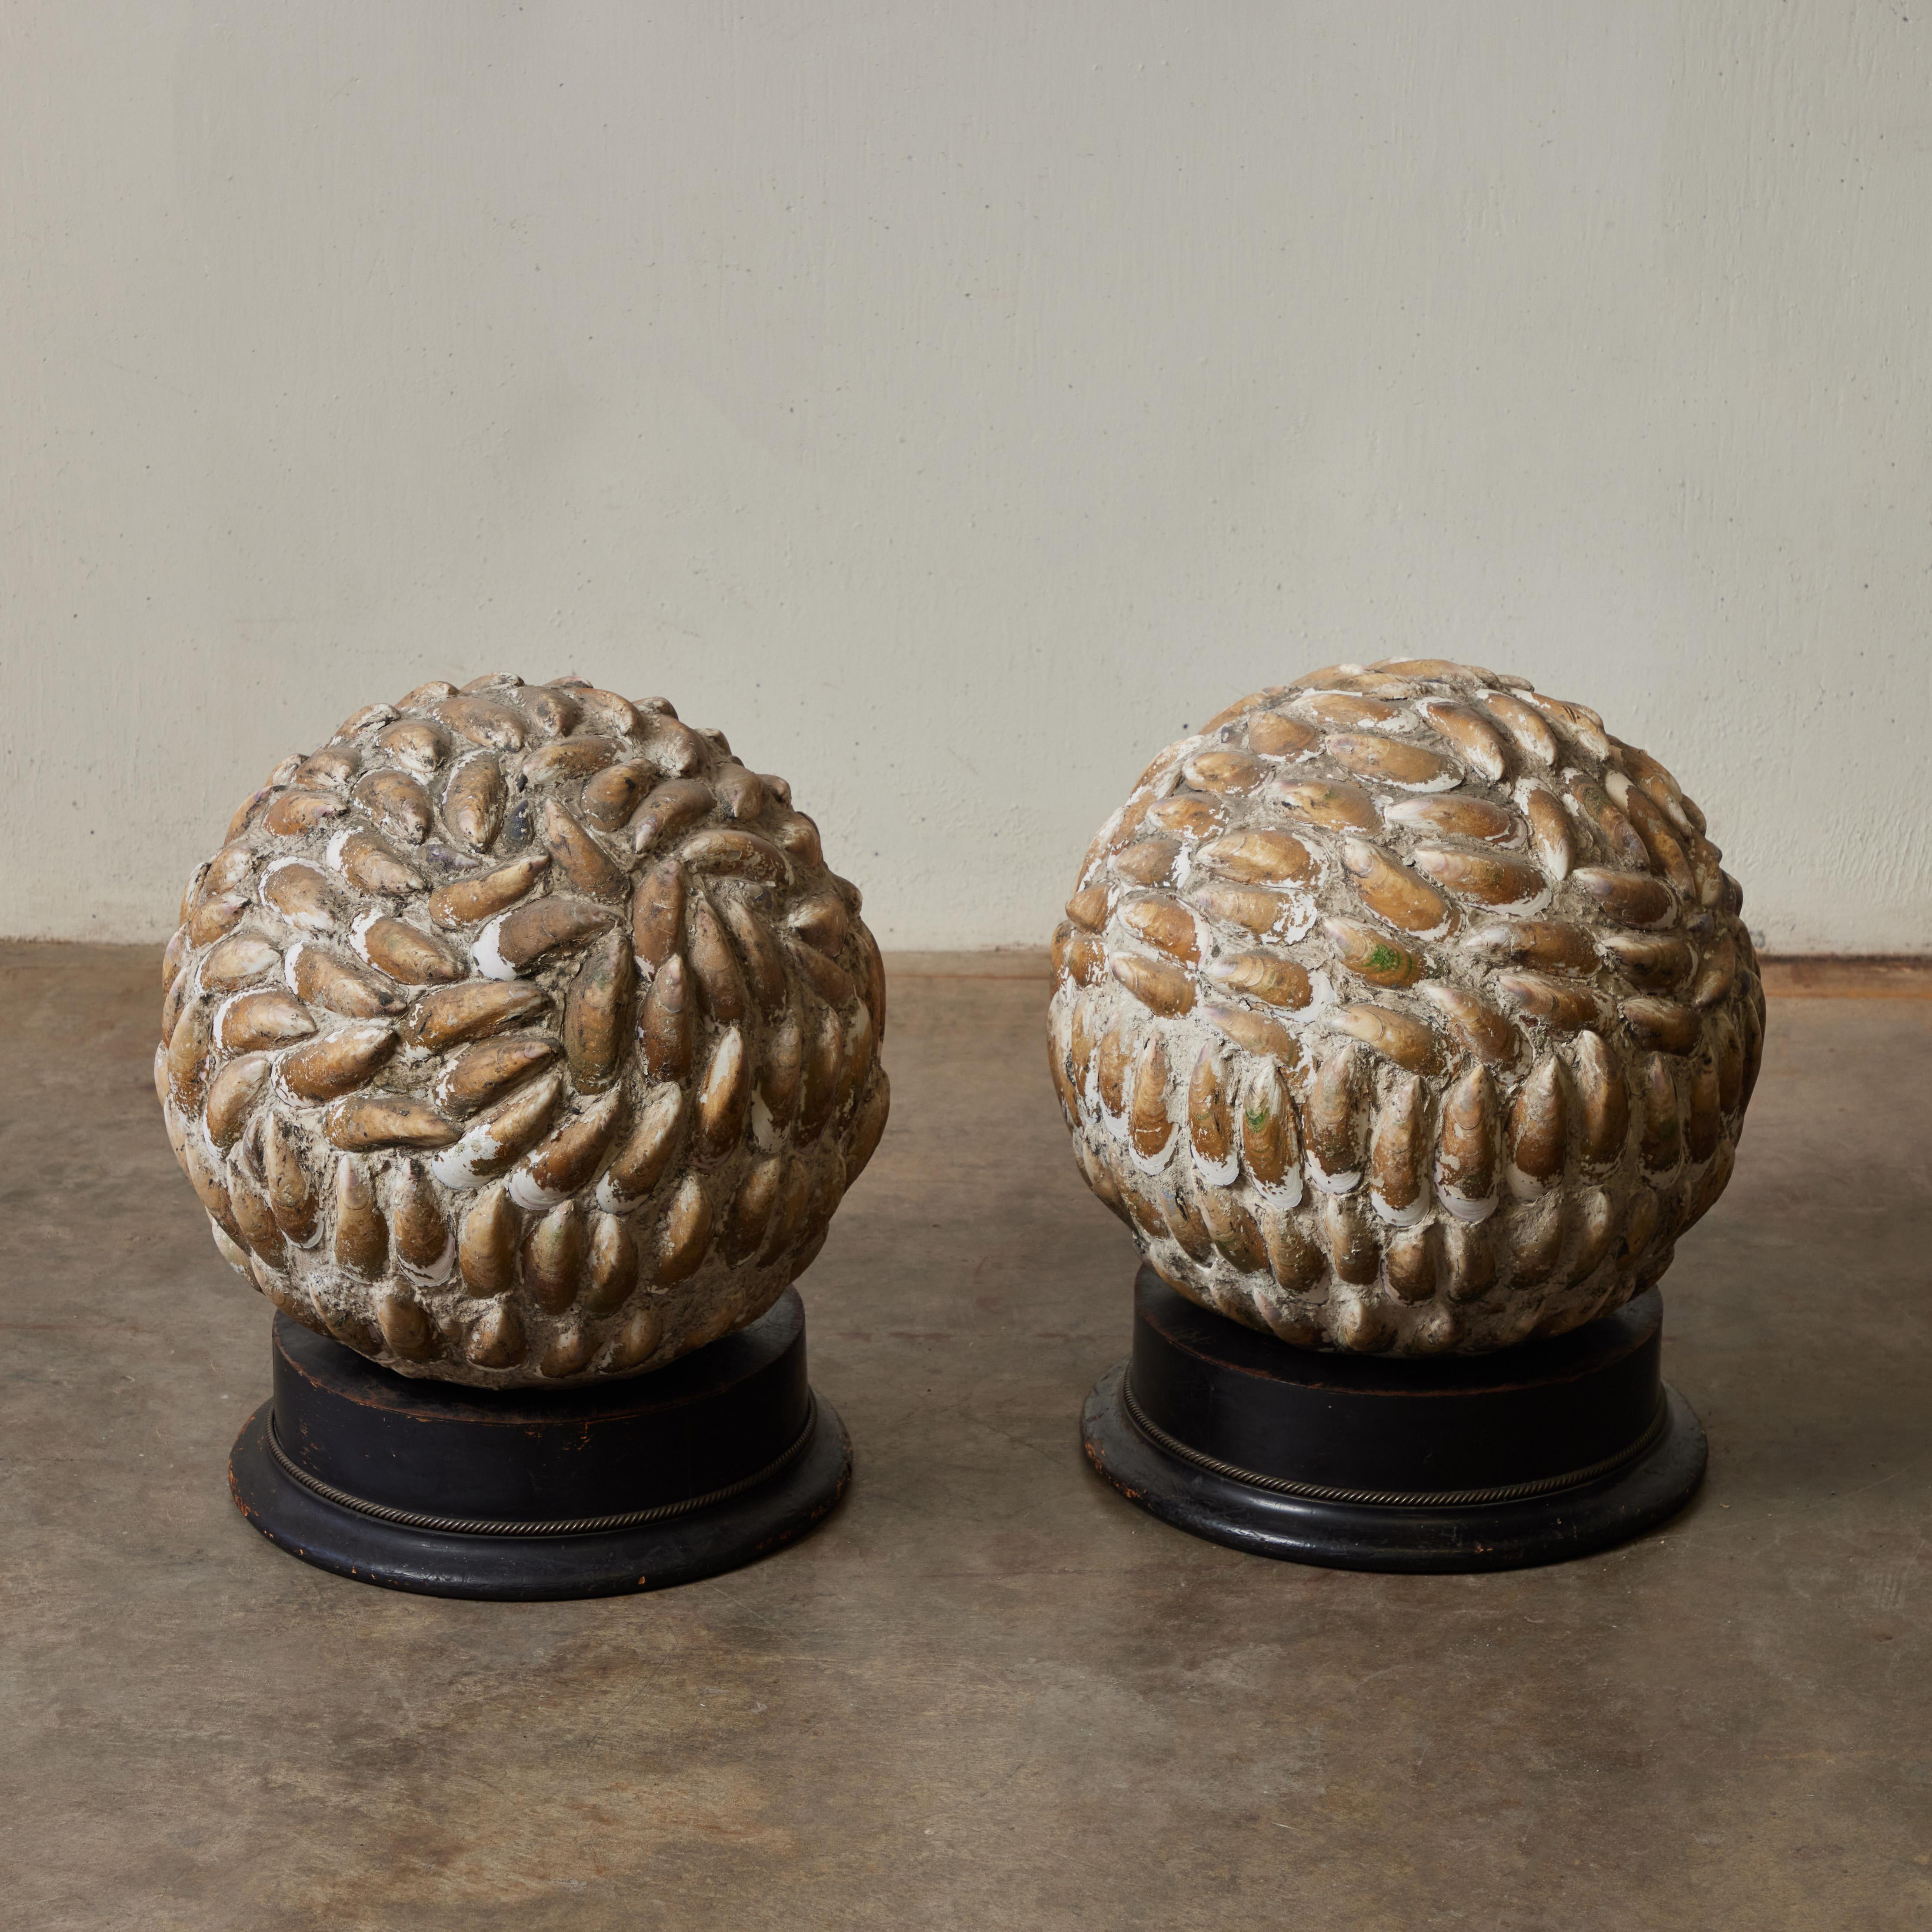 Paire de magnifiques sculptures en forme de sphère provenant de l'Angleterre des années 1920. Avec un motif rythmique de coquilles de moules et montés sur des socles ronds en ébène, la paire ajoute une touche naturaliste à une table ou une étagère.